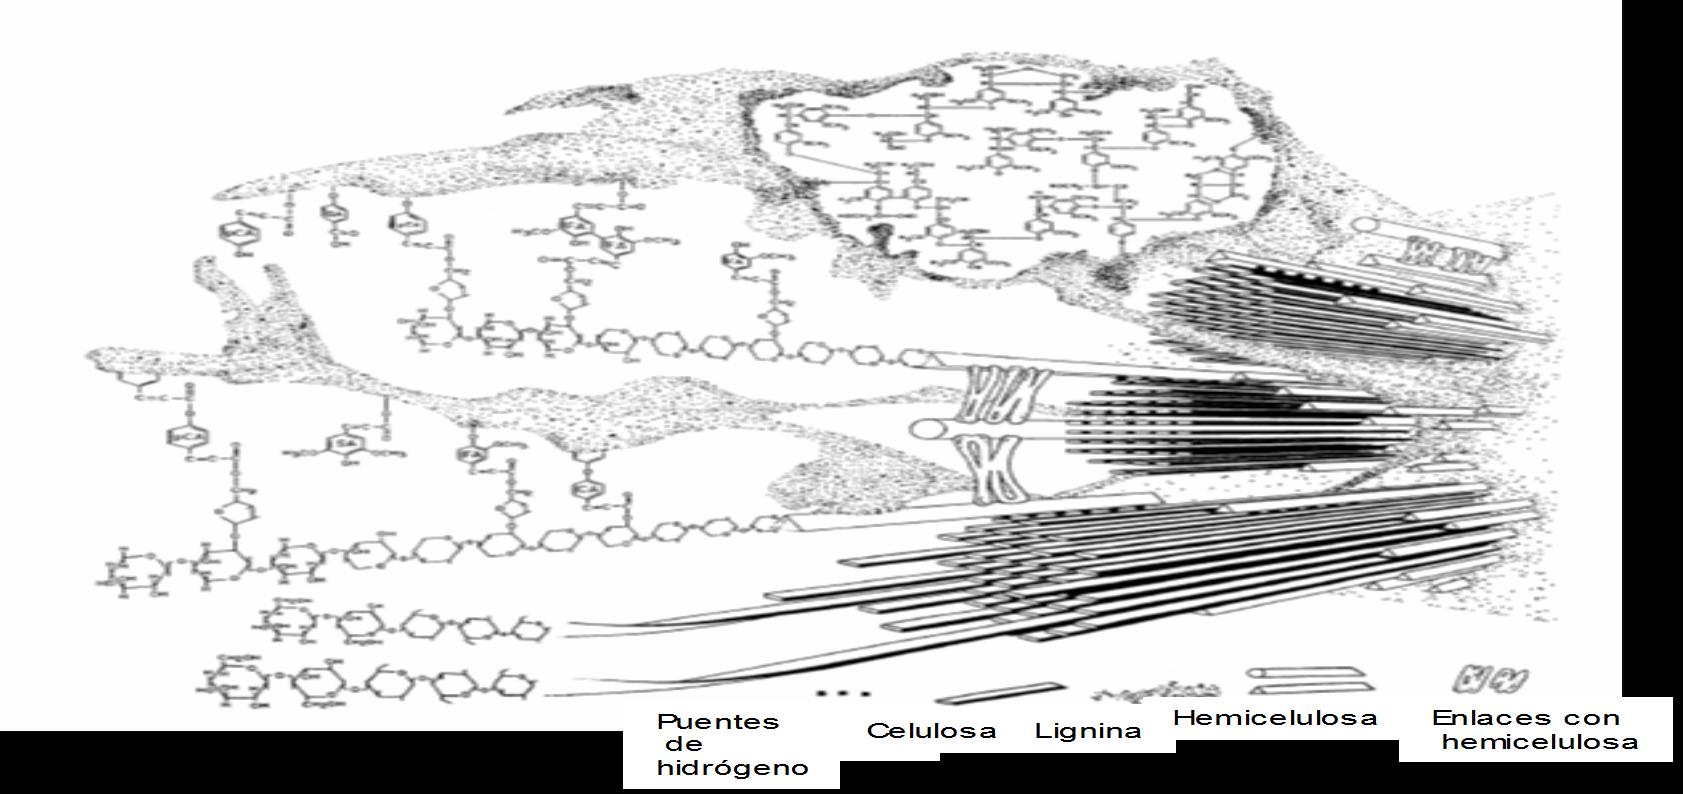 Lignocelulosa: estructura y composición - Material complejo y heterogéneo - Componentes fuertemente estructurados - Difícil